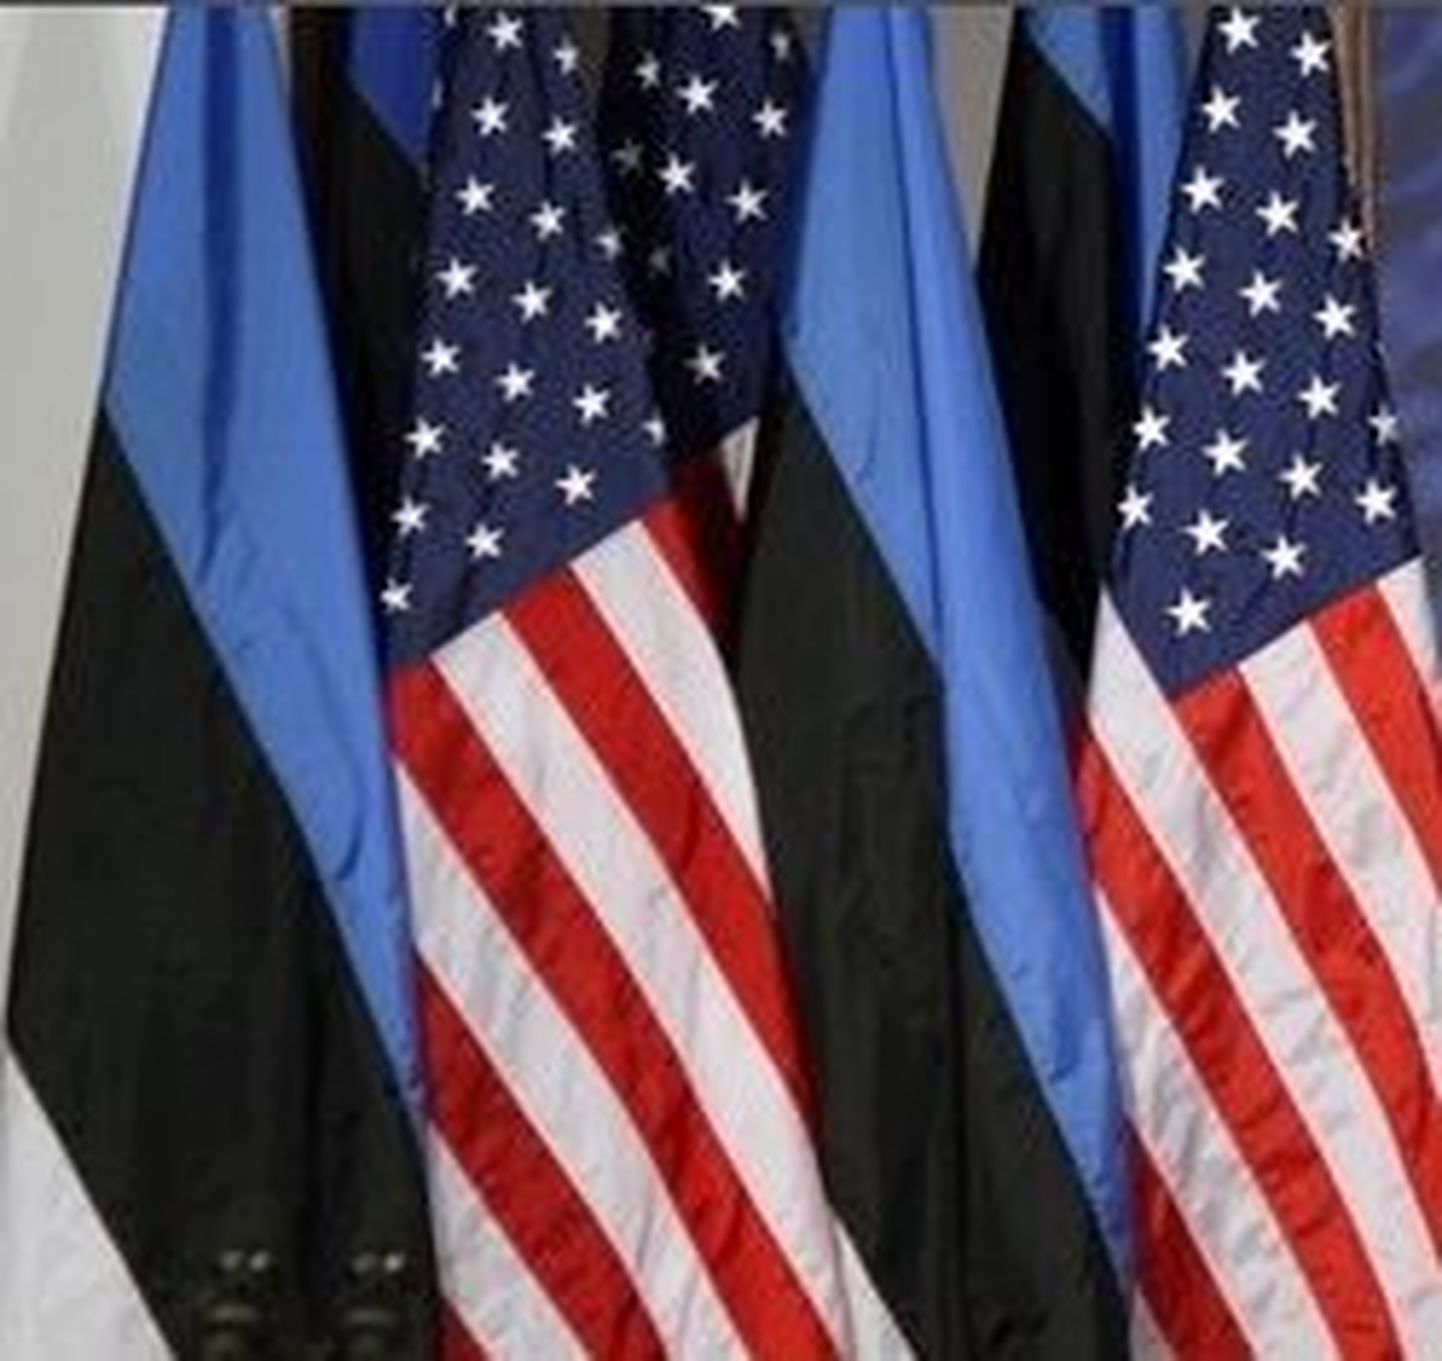 Pilt on tehtud 2001. aastal, kui Eestit väisas USA president George Bush.